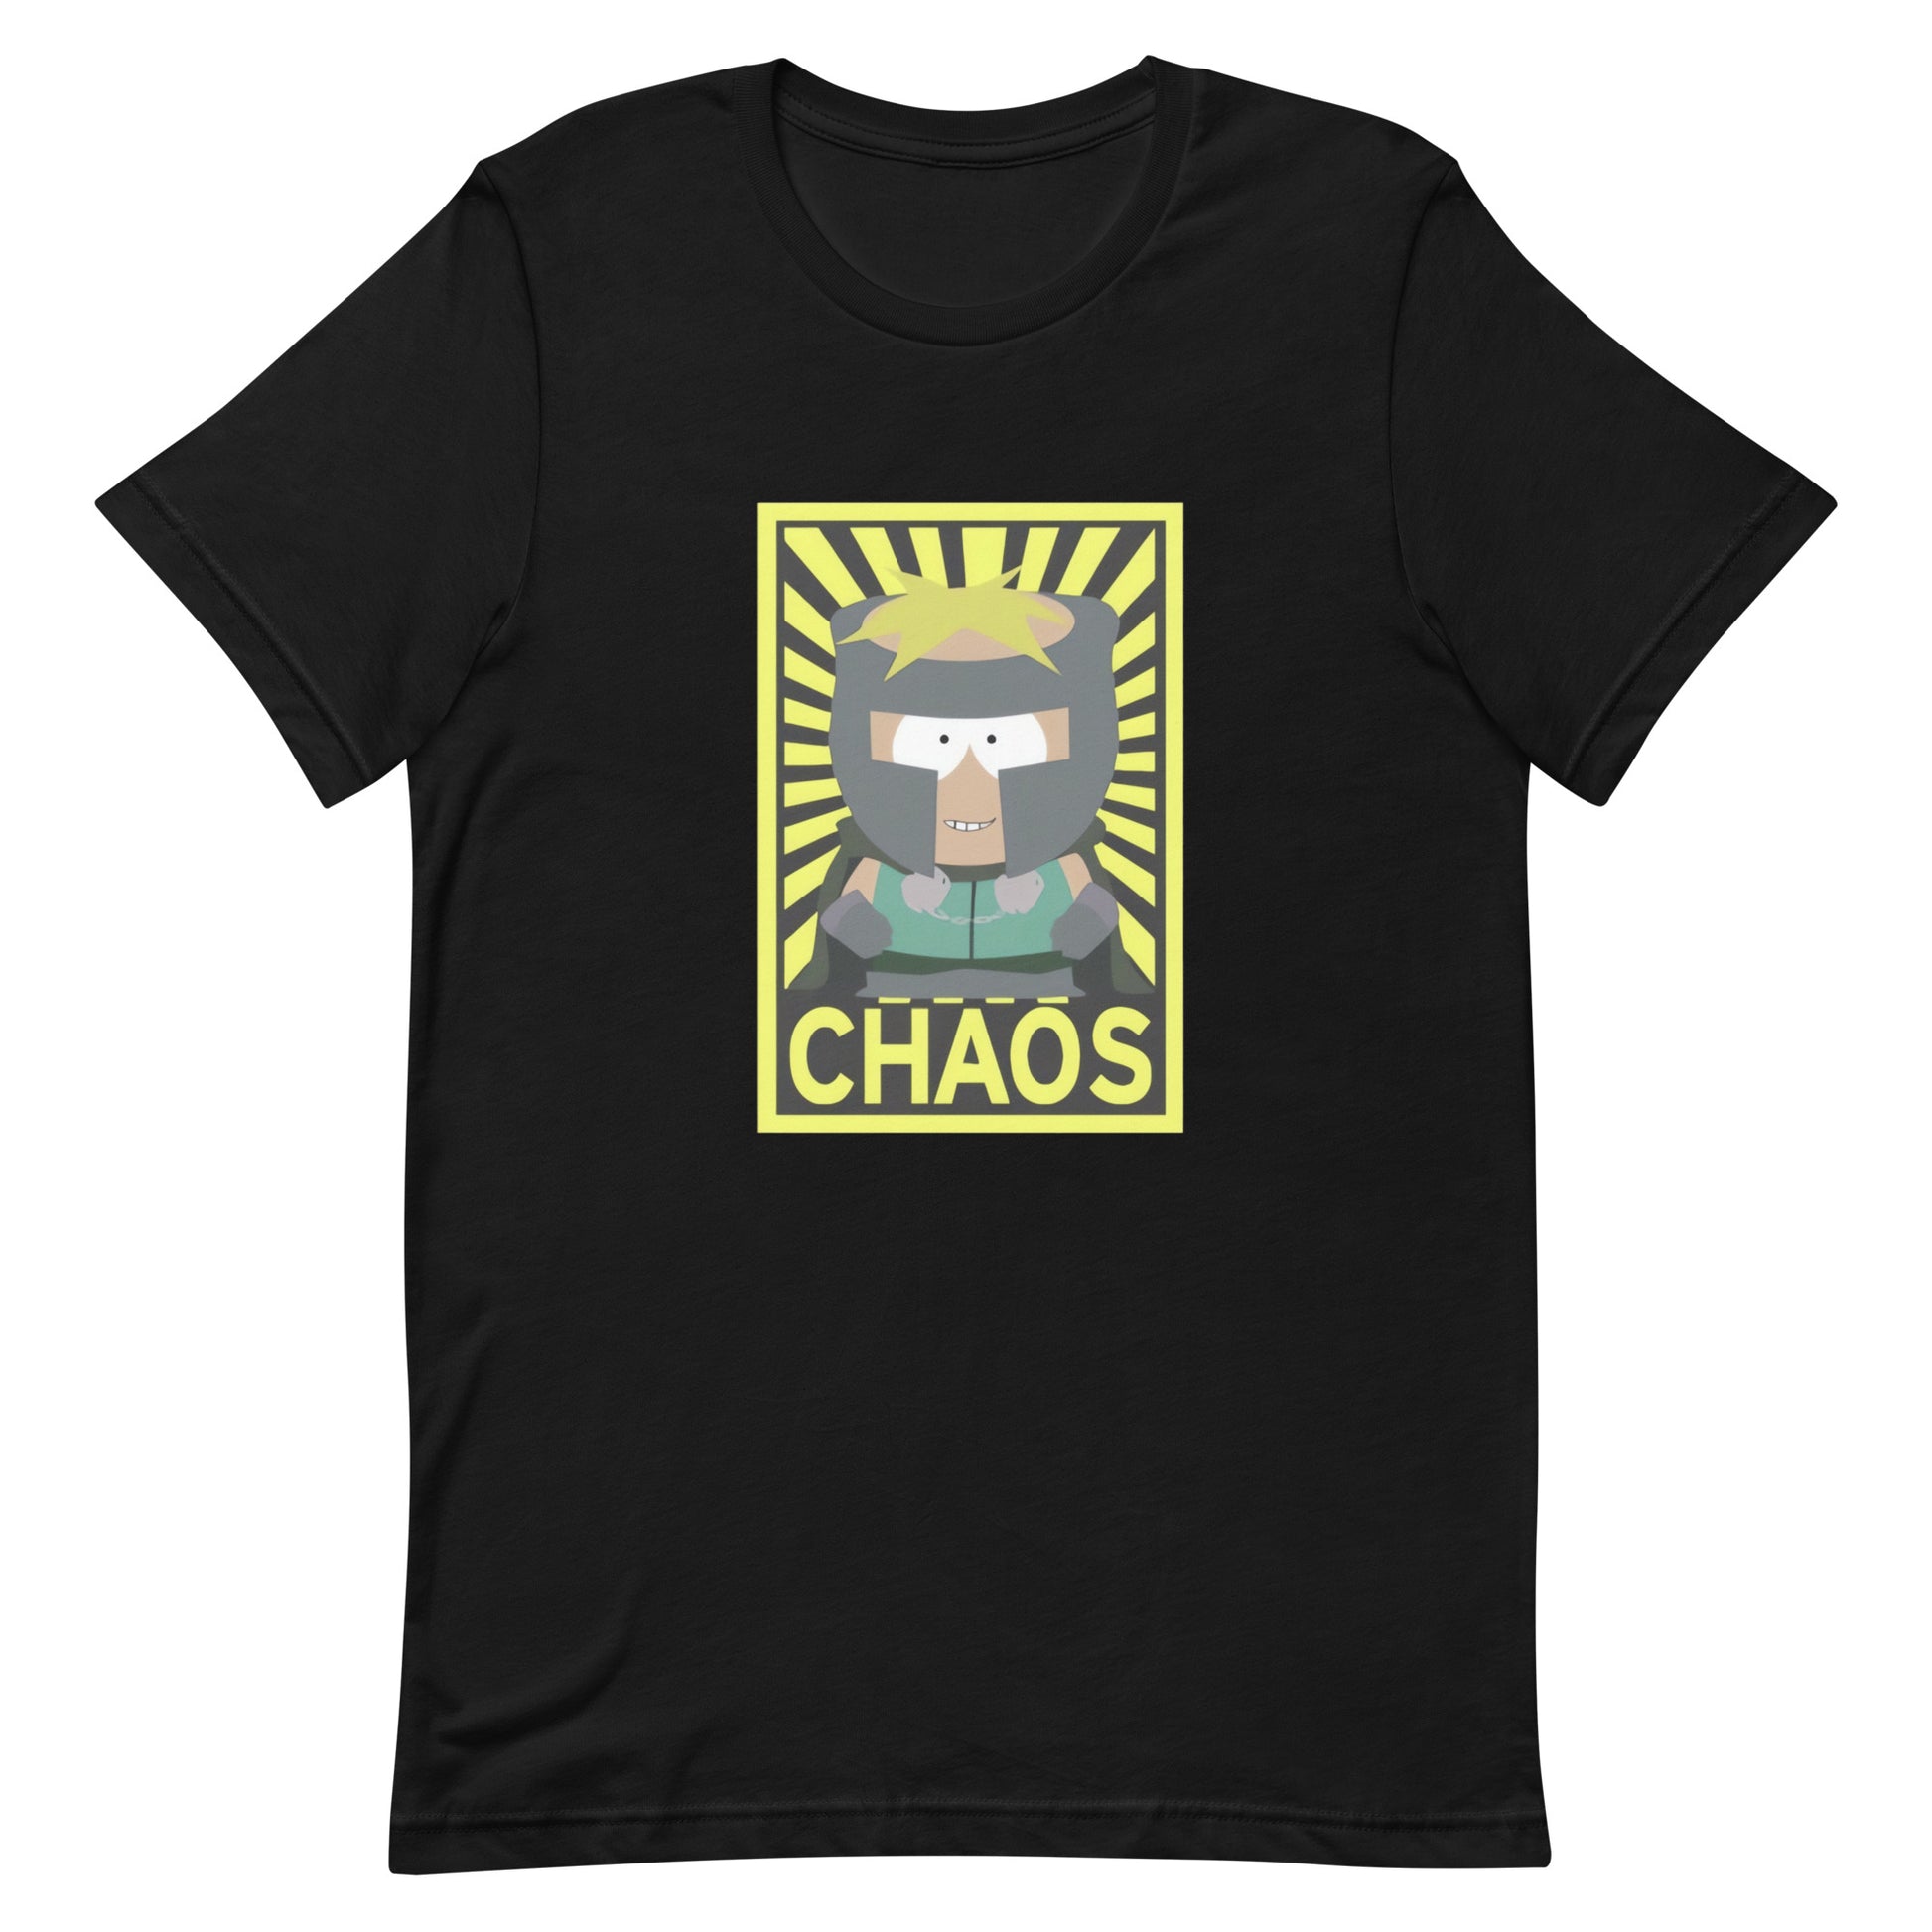 Camiseta Professor Chaos, nuestras opciones de playeras son Unisex. disponible en Superstar. Compra y envíos internacionales.